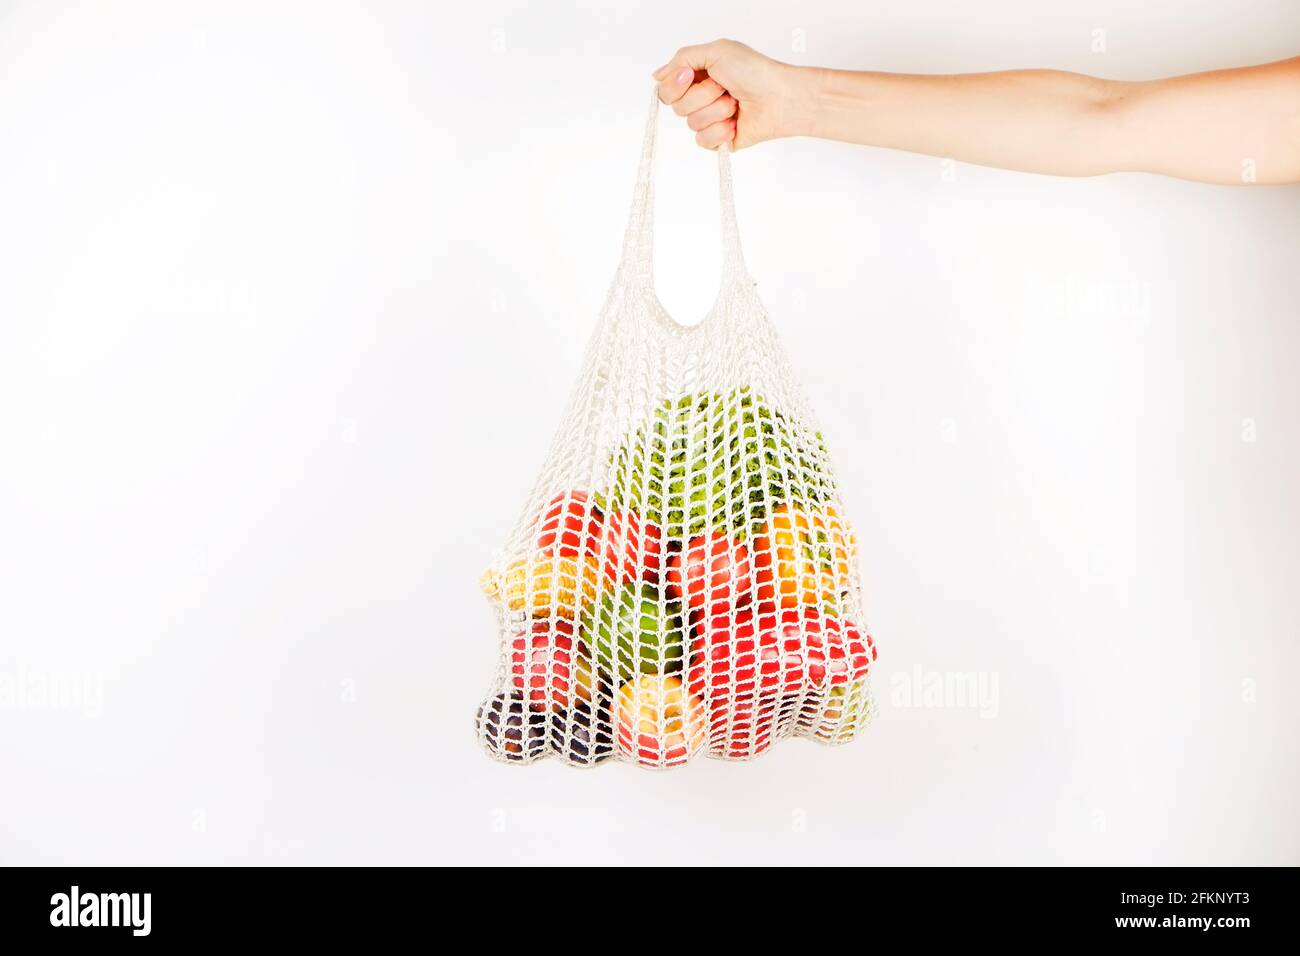 Main de femme non reconnaissable tenant un sac de fruits, légumes et  légumes verts : épis de maïs, tomate, poivre, laitue, poire et pomme.  Aucune perte de conflue Photo Stock - Alamy